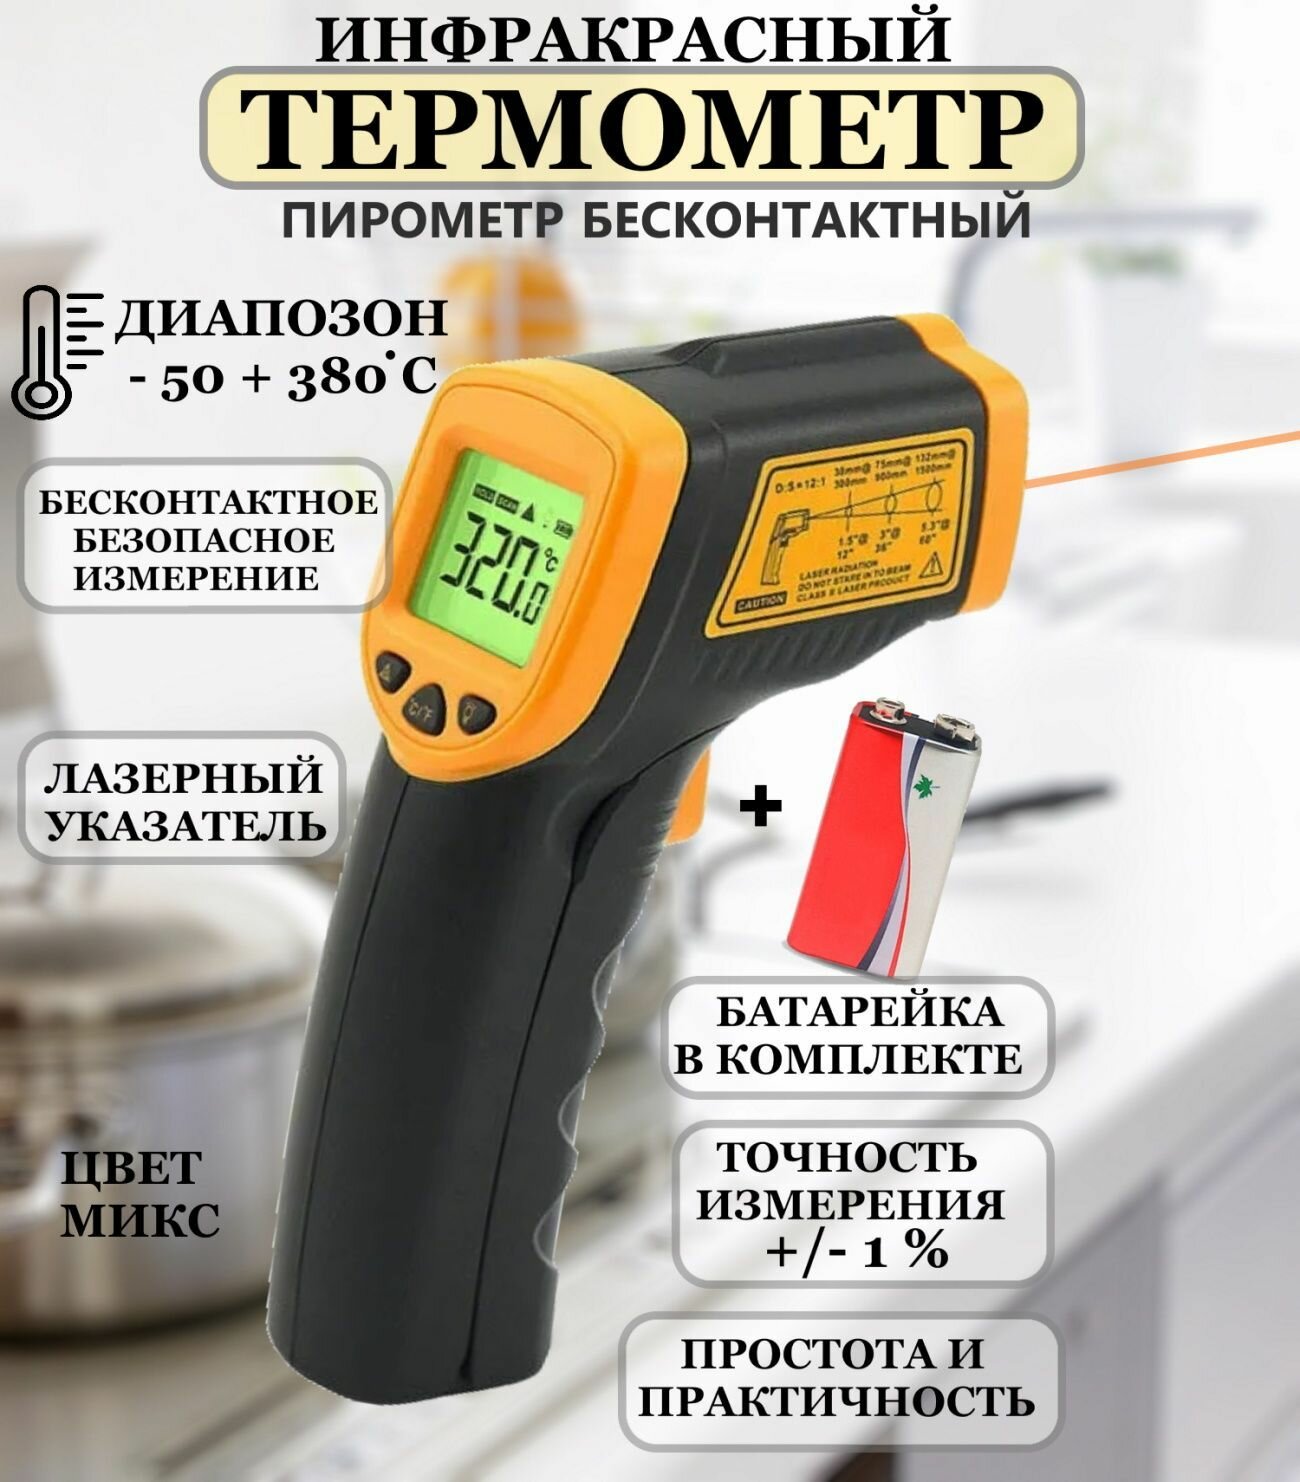 Бесконтактный электронный термометр 380 С Рах бытовой инфракрасный термометр кухонный термометр лазерный термометр с инфракрасным лучом термометр универсальный измеритель температуры пирометр бесконтактный автомобильный термометр до 380 С